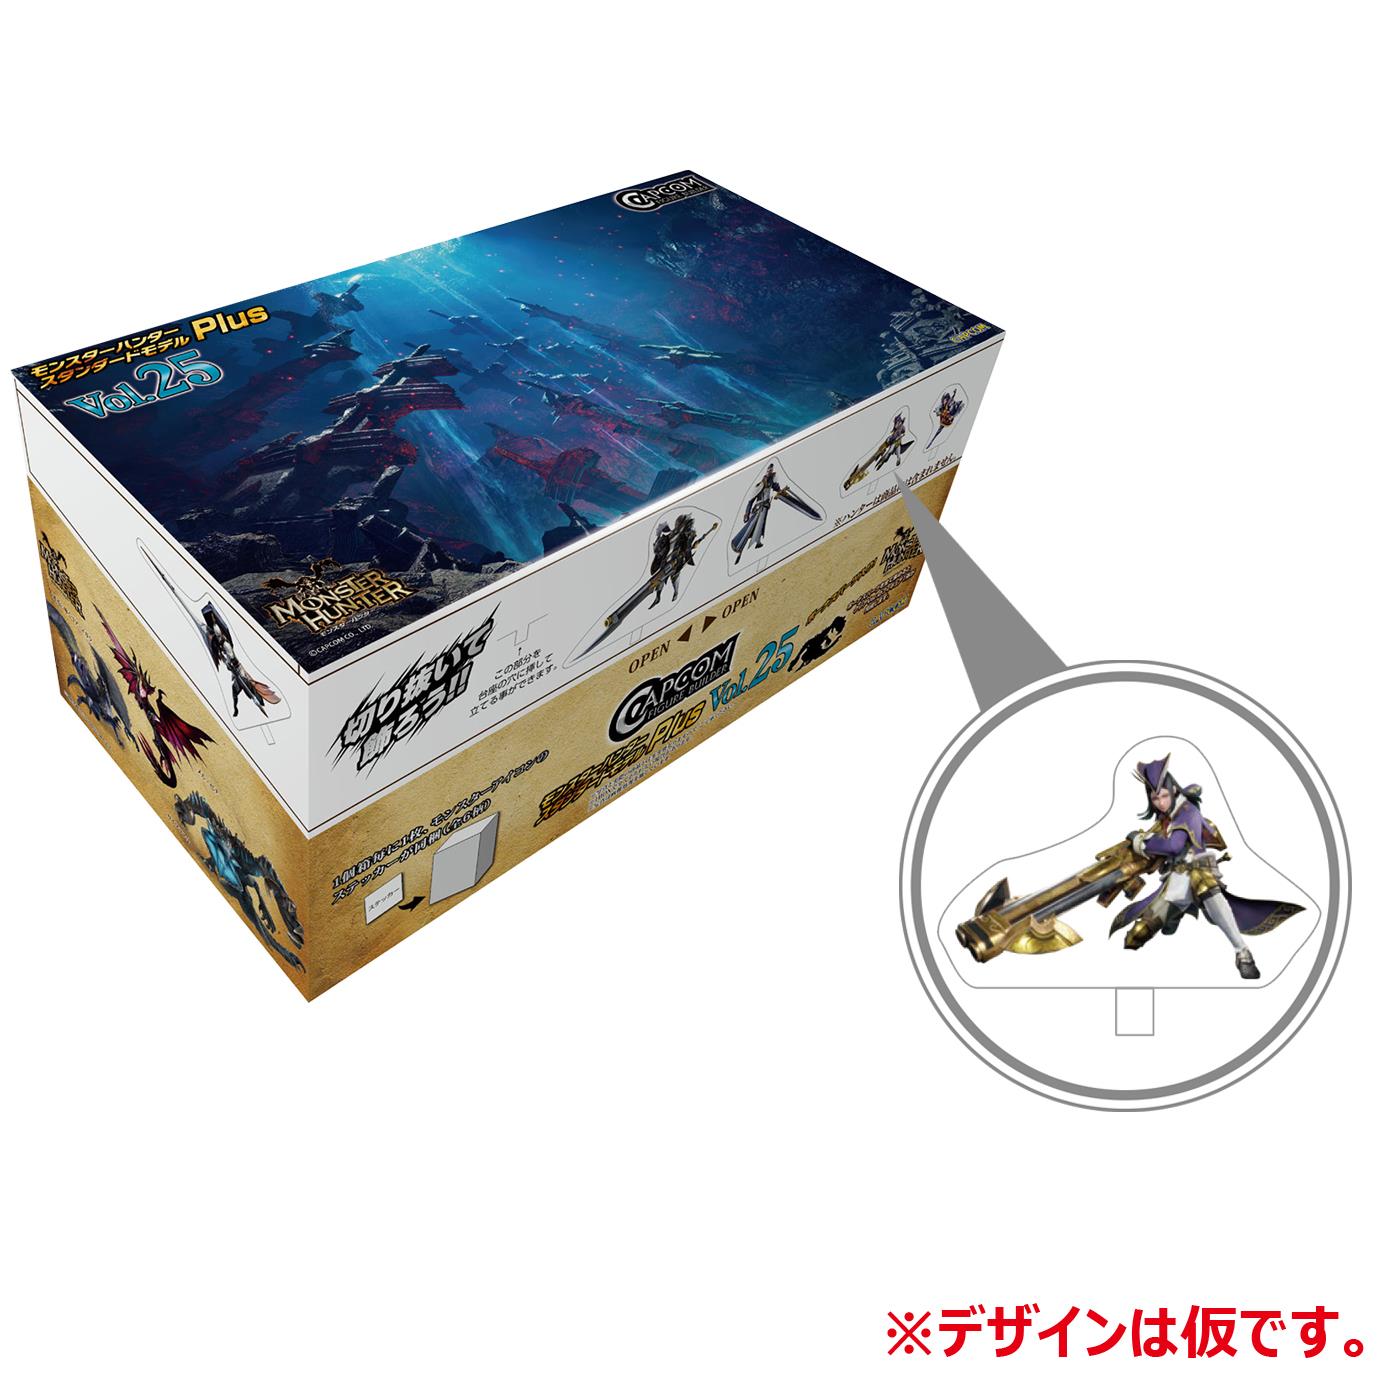 Monster Hunter: Standard Model Plus Vol. 25 Blind Box